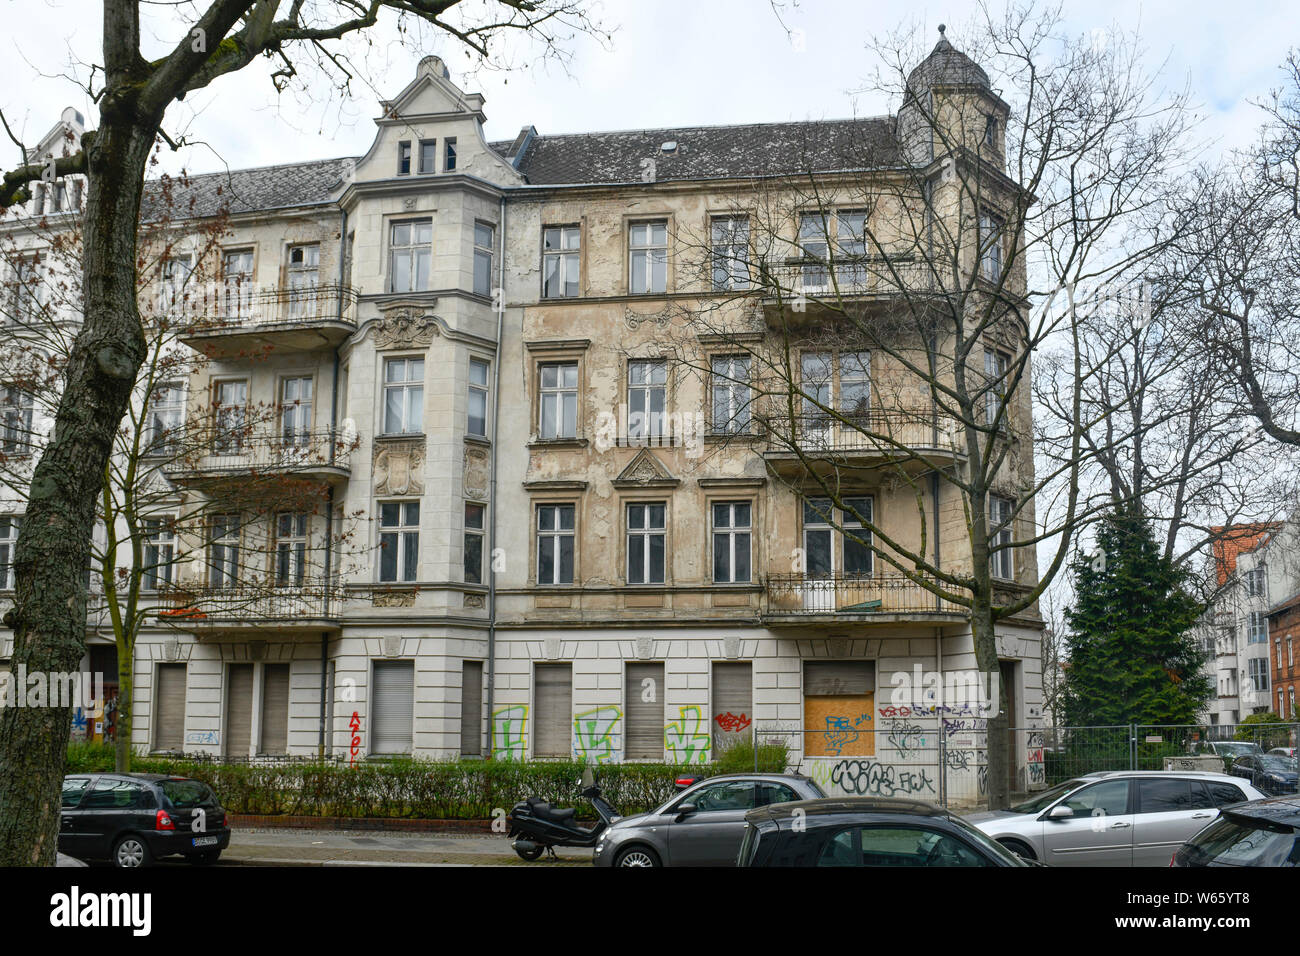 Leerstand Wohnhaus, Stubenrauchstrasse Ecke Odenwaldstrasse, Friedenau, Berlin, Deutschland Stockfoto